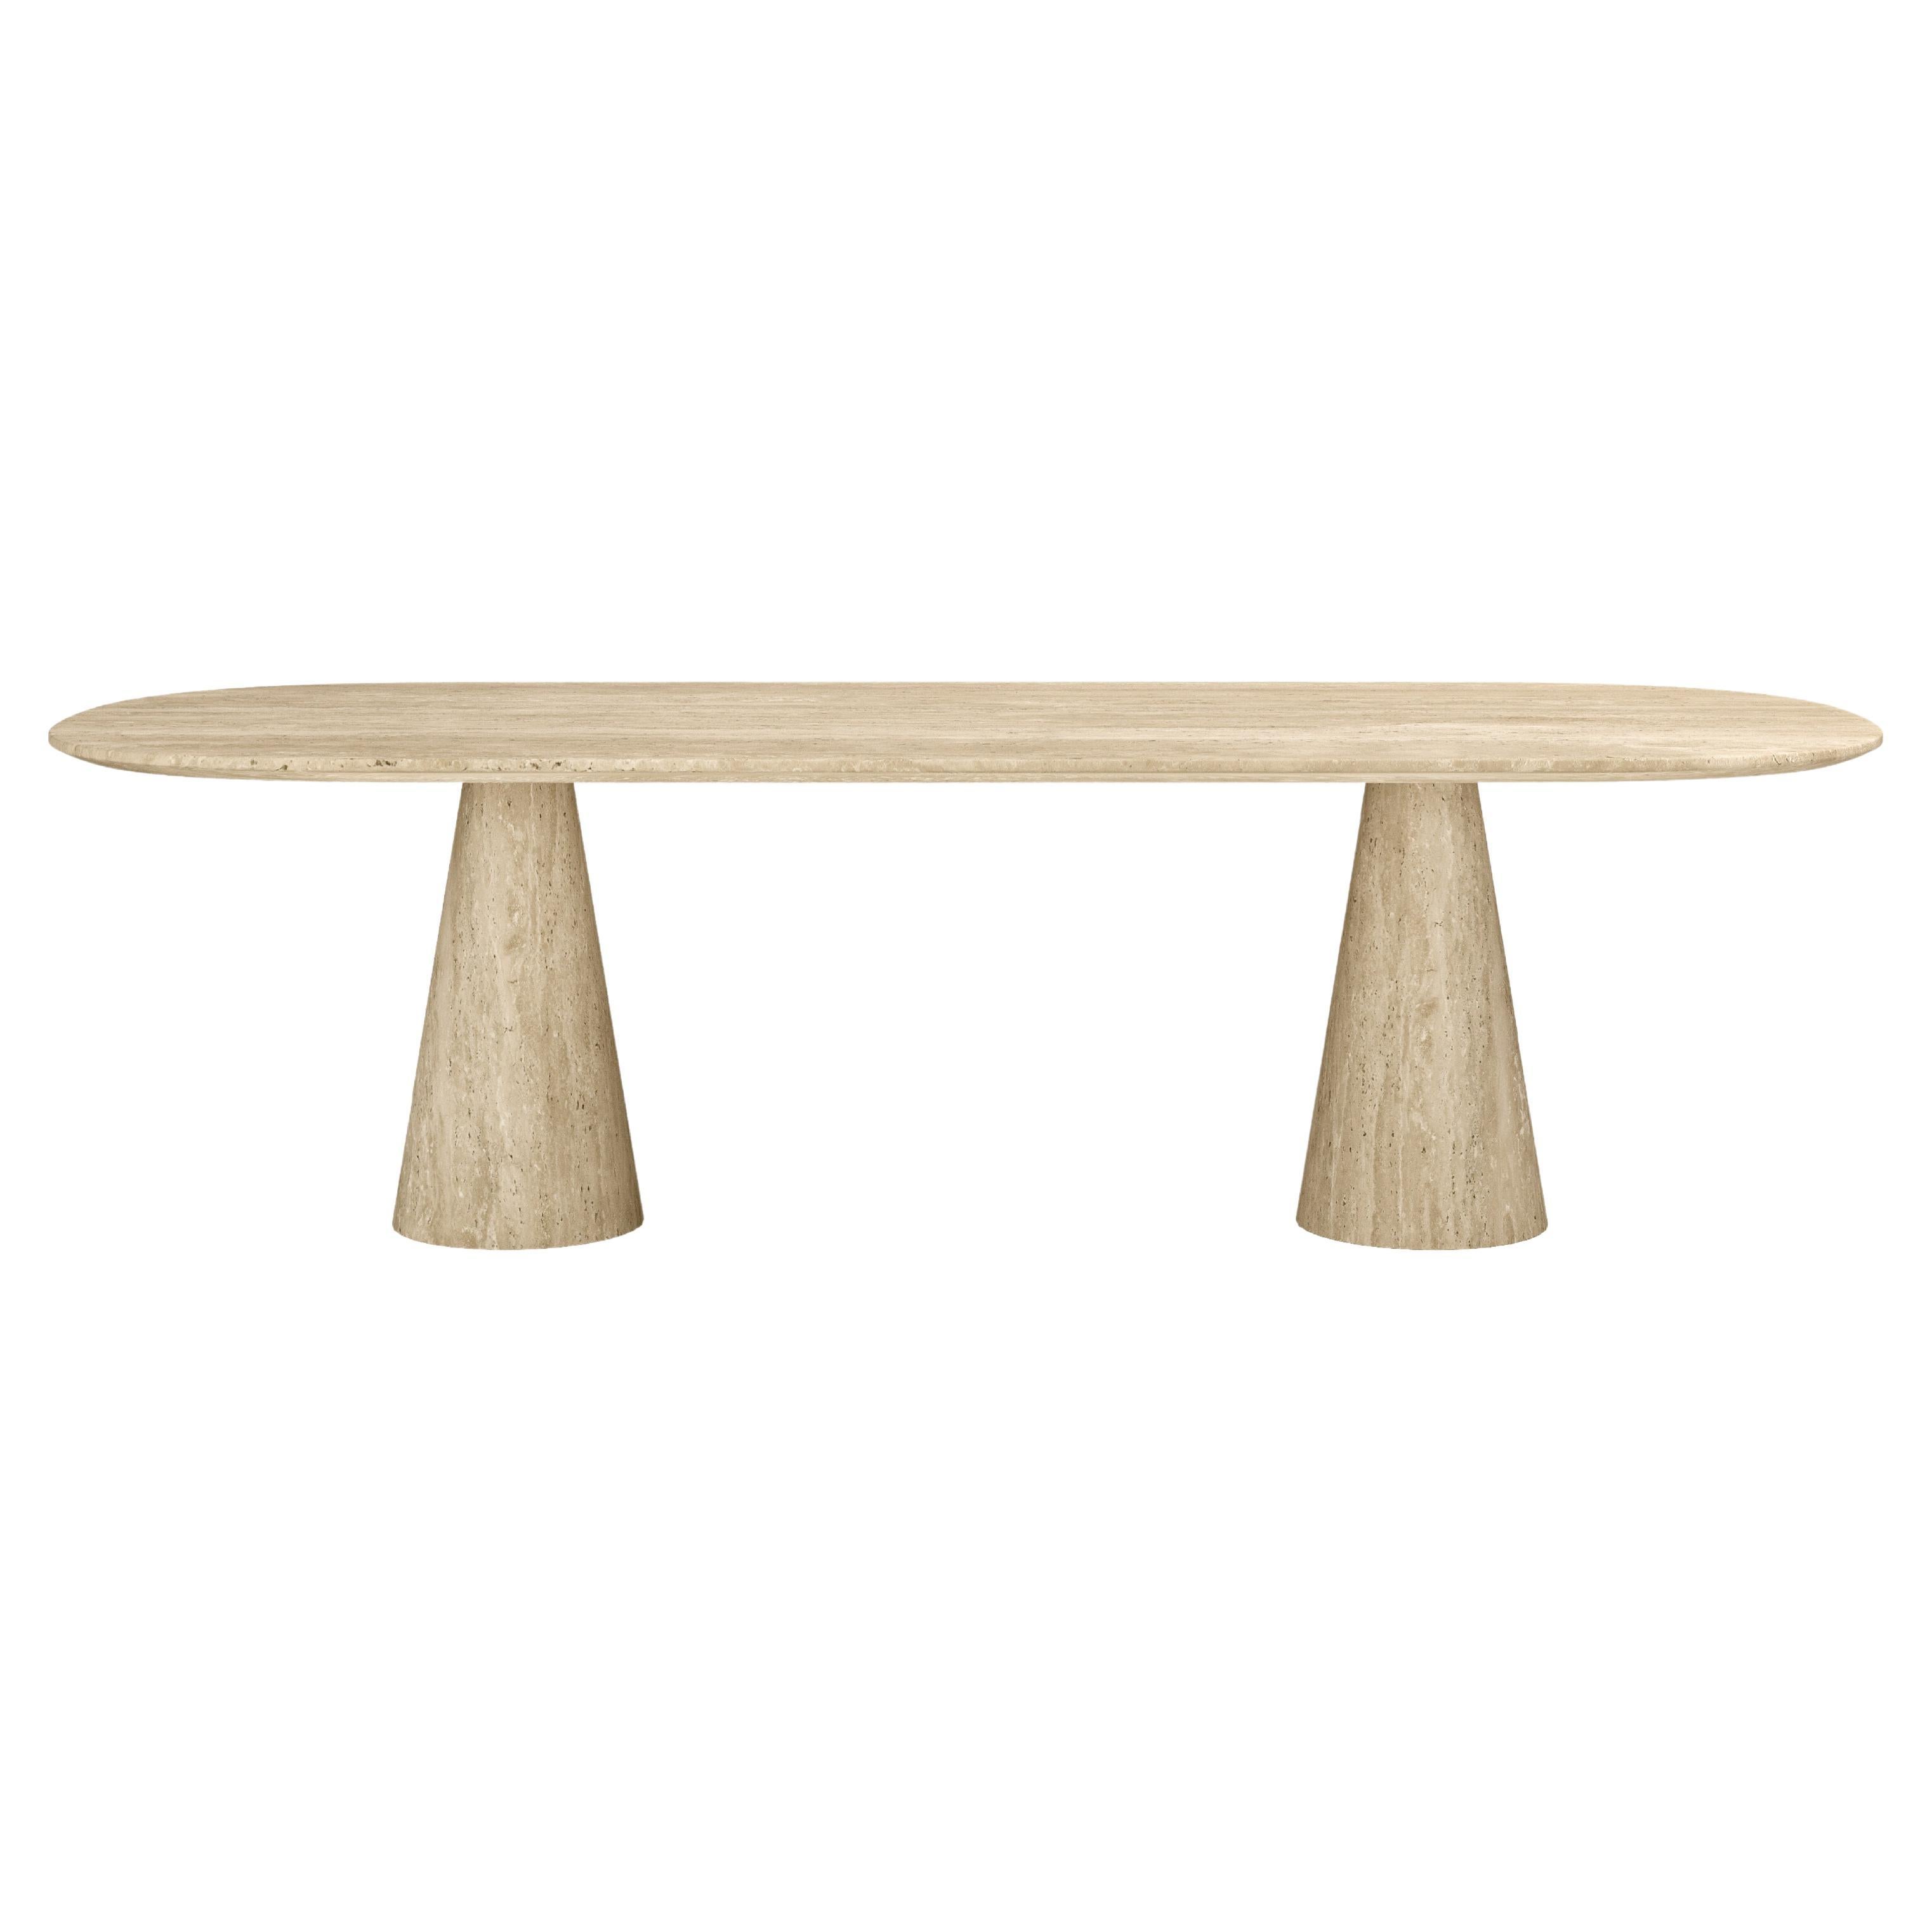 FORM(LA) Cono Oval Dining Table 118”L x 48”W x 30”H Travertino Crema VC For Sale